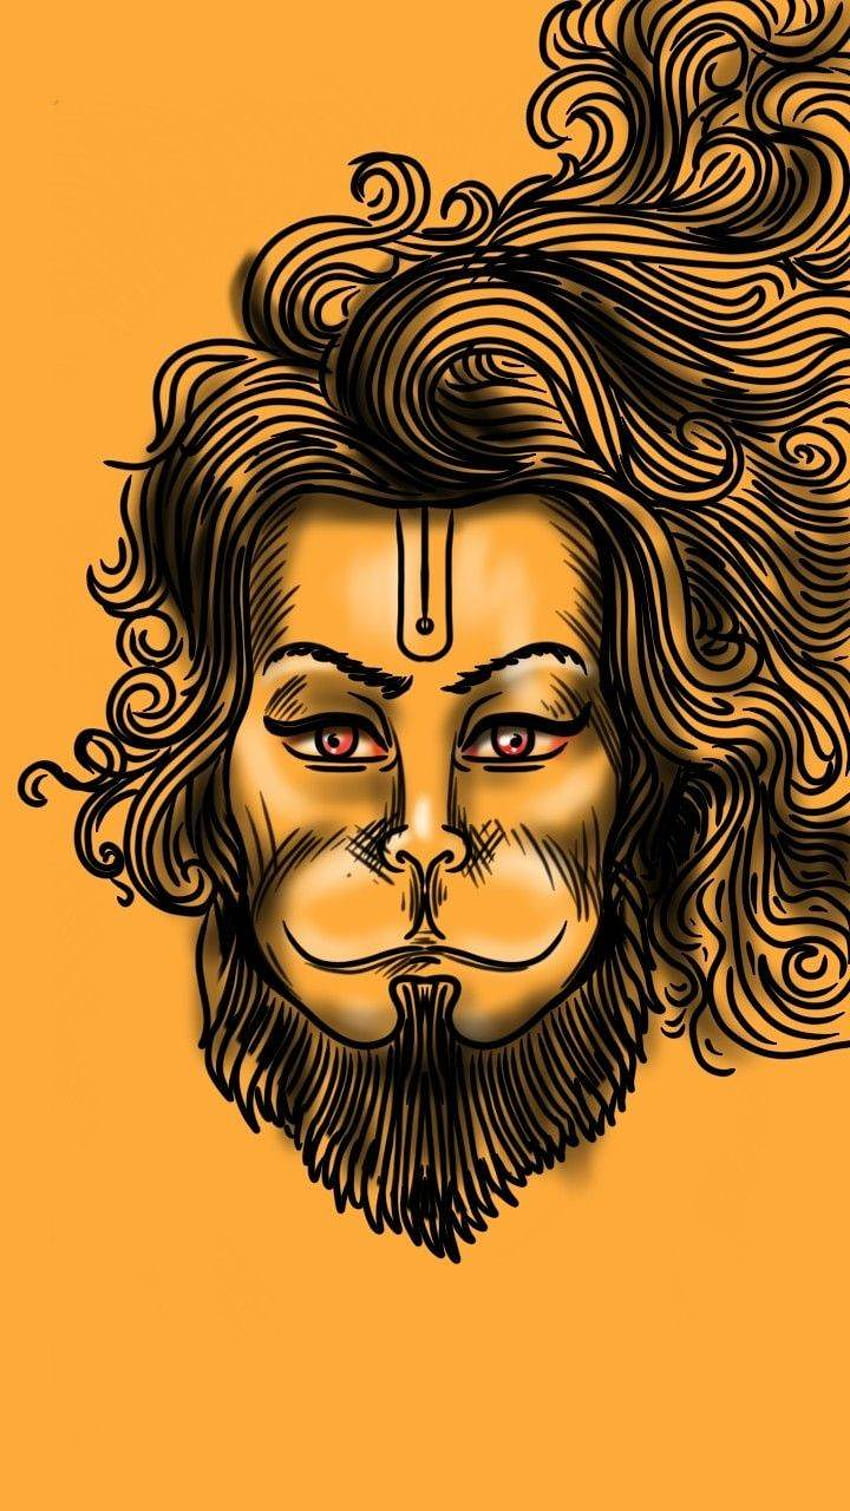 Jay Hanuman przez guptaram, bajrang dal Tapeta na telefon HD